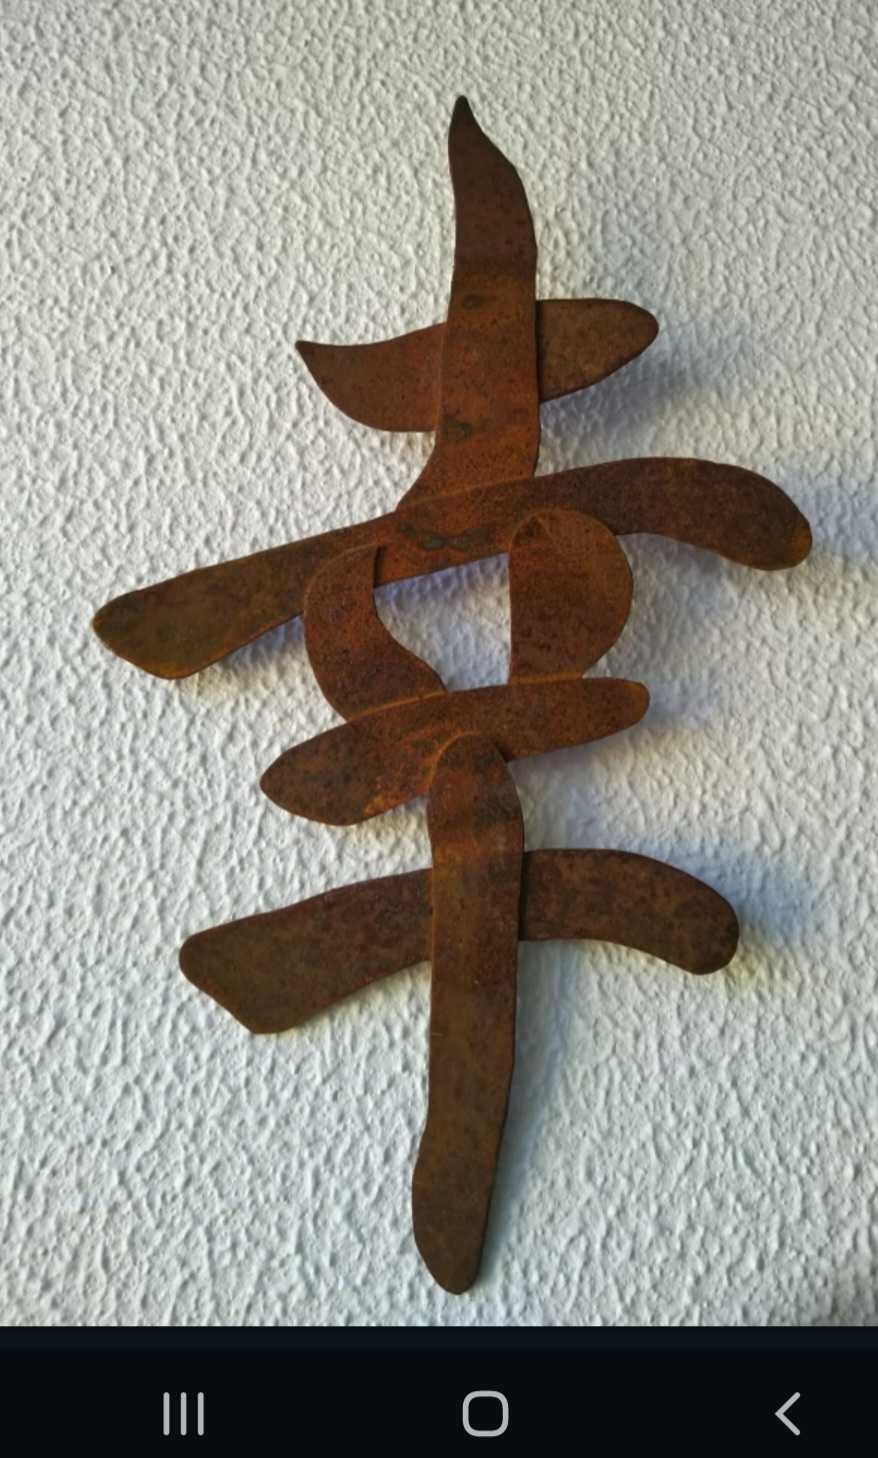 Simbolo japonês em chapa de ferro oxidado feito artesanalmente